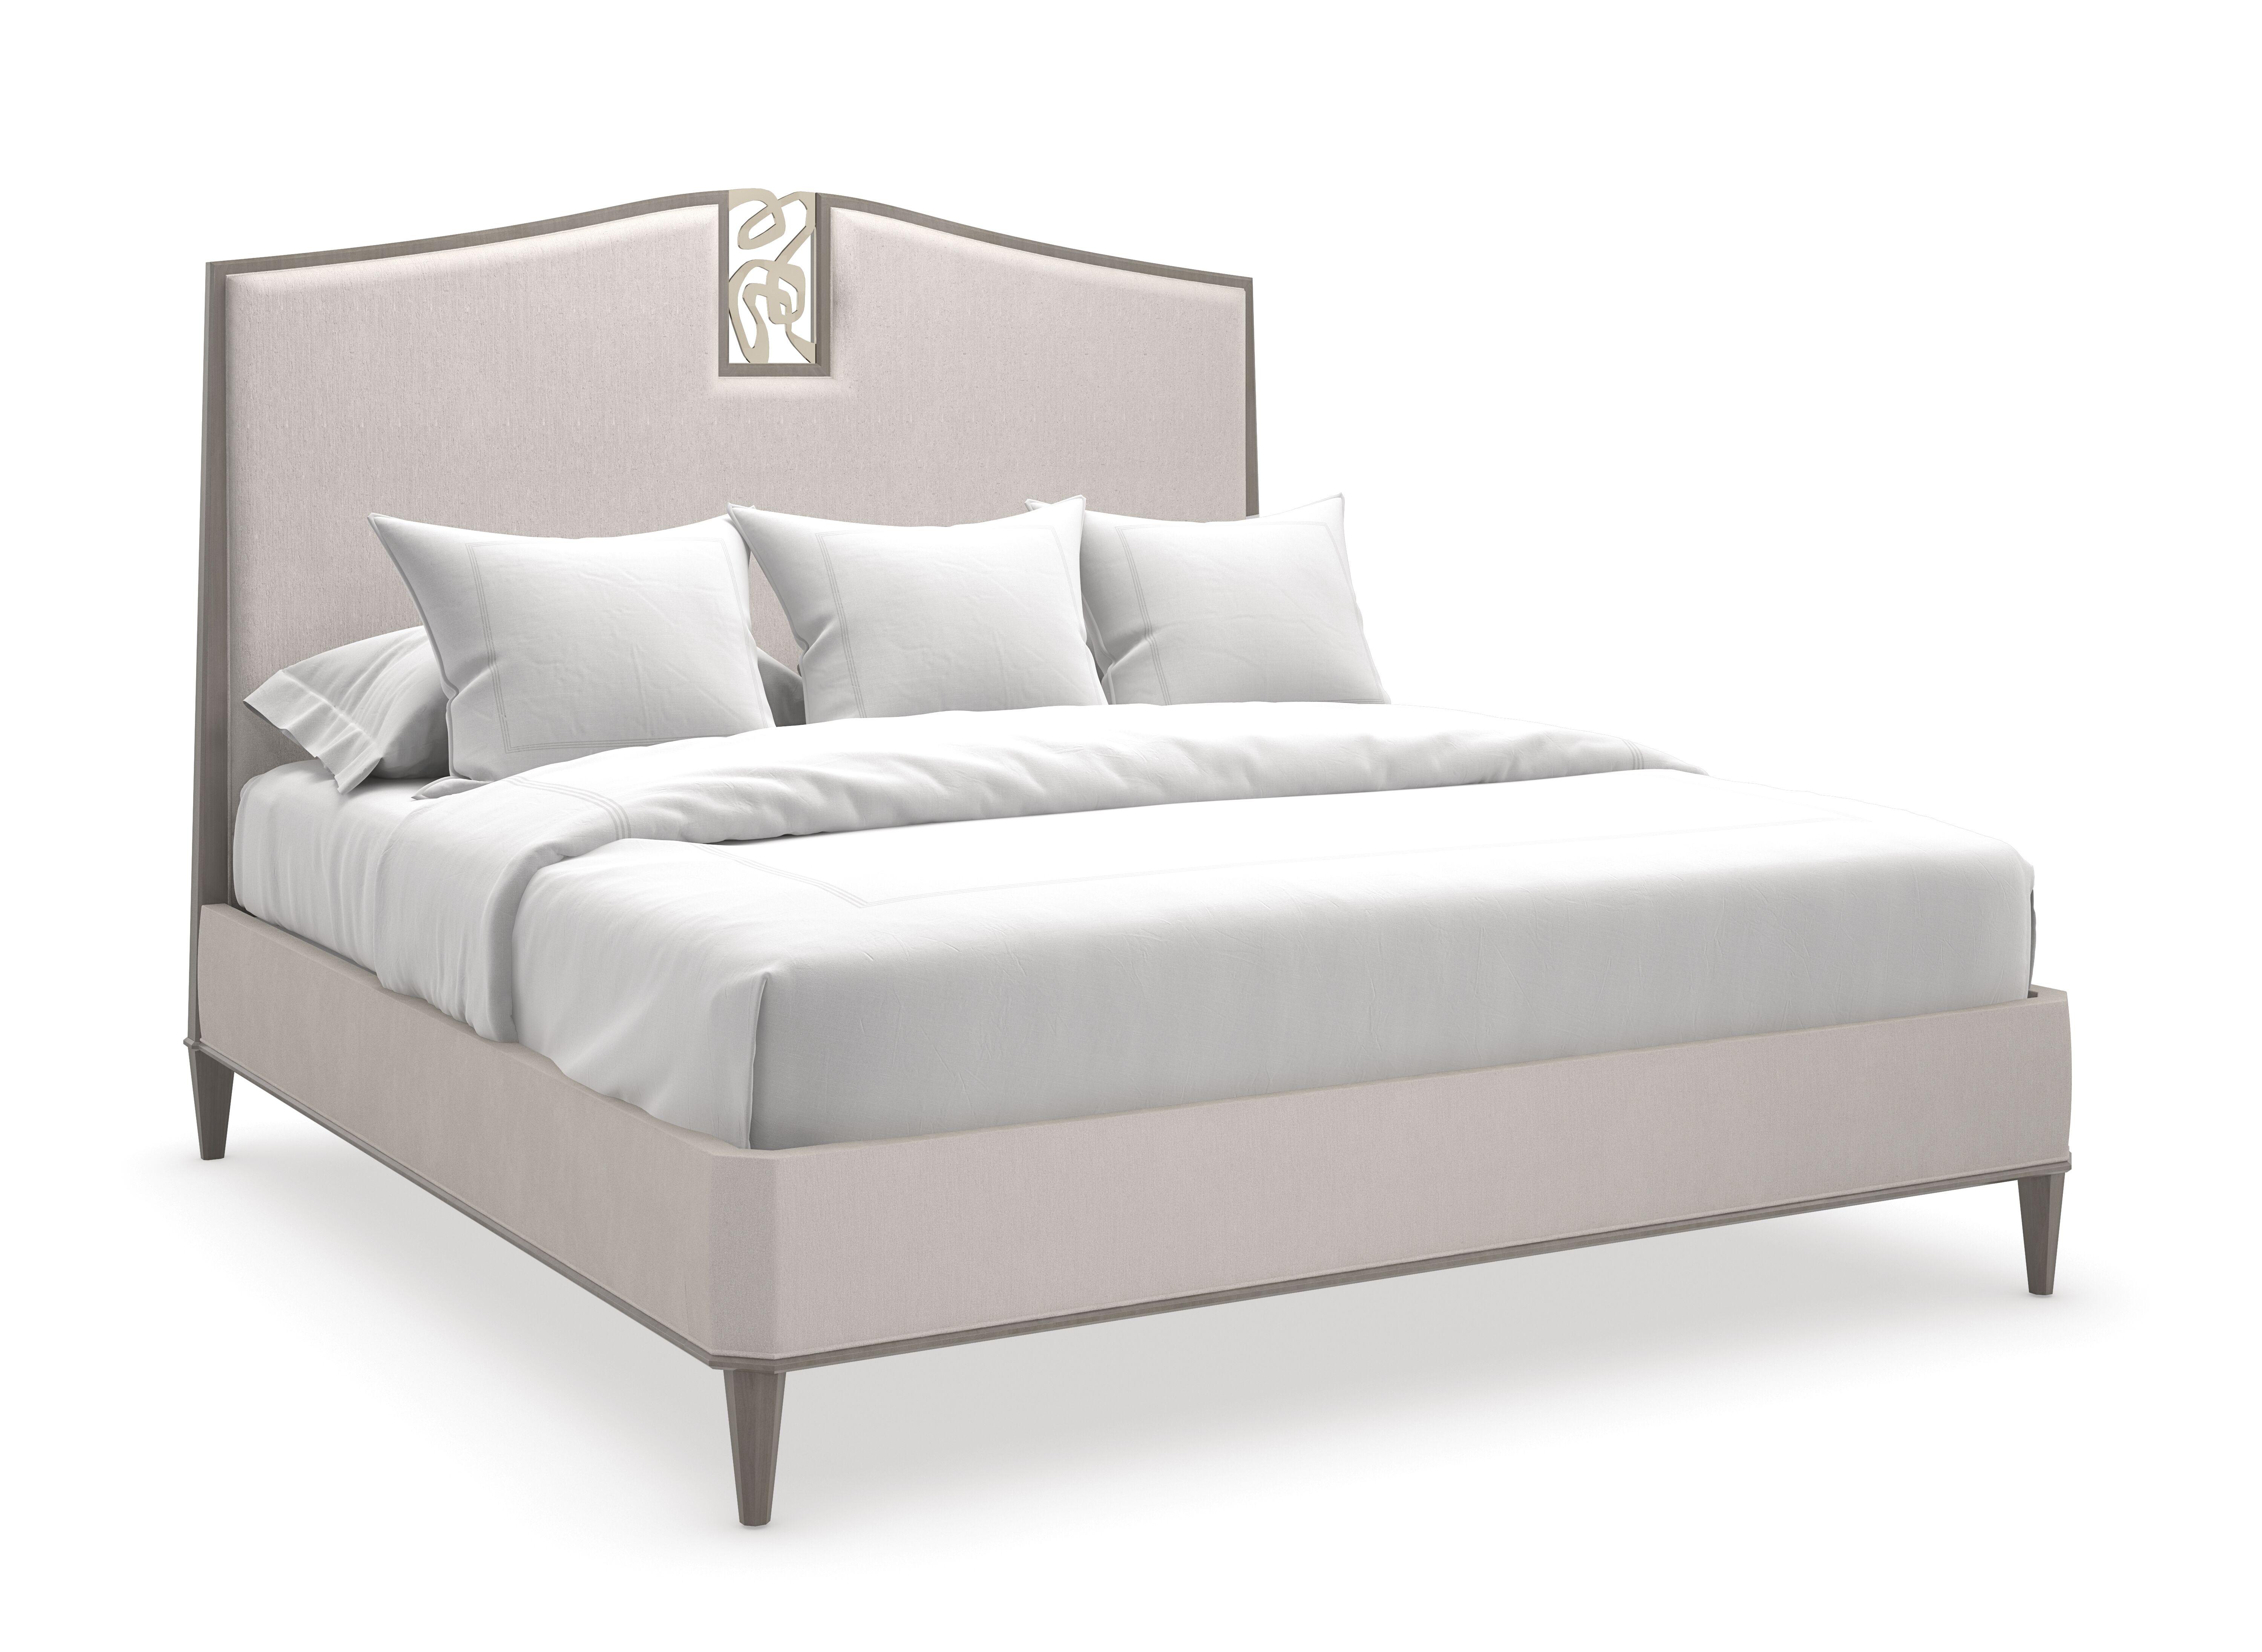 Contemporary Platform Bed CRESCENDO CLA-422-121 in Cappuccino, Beige Fabric